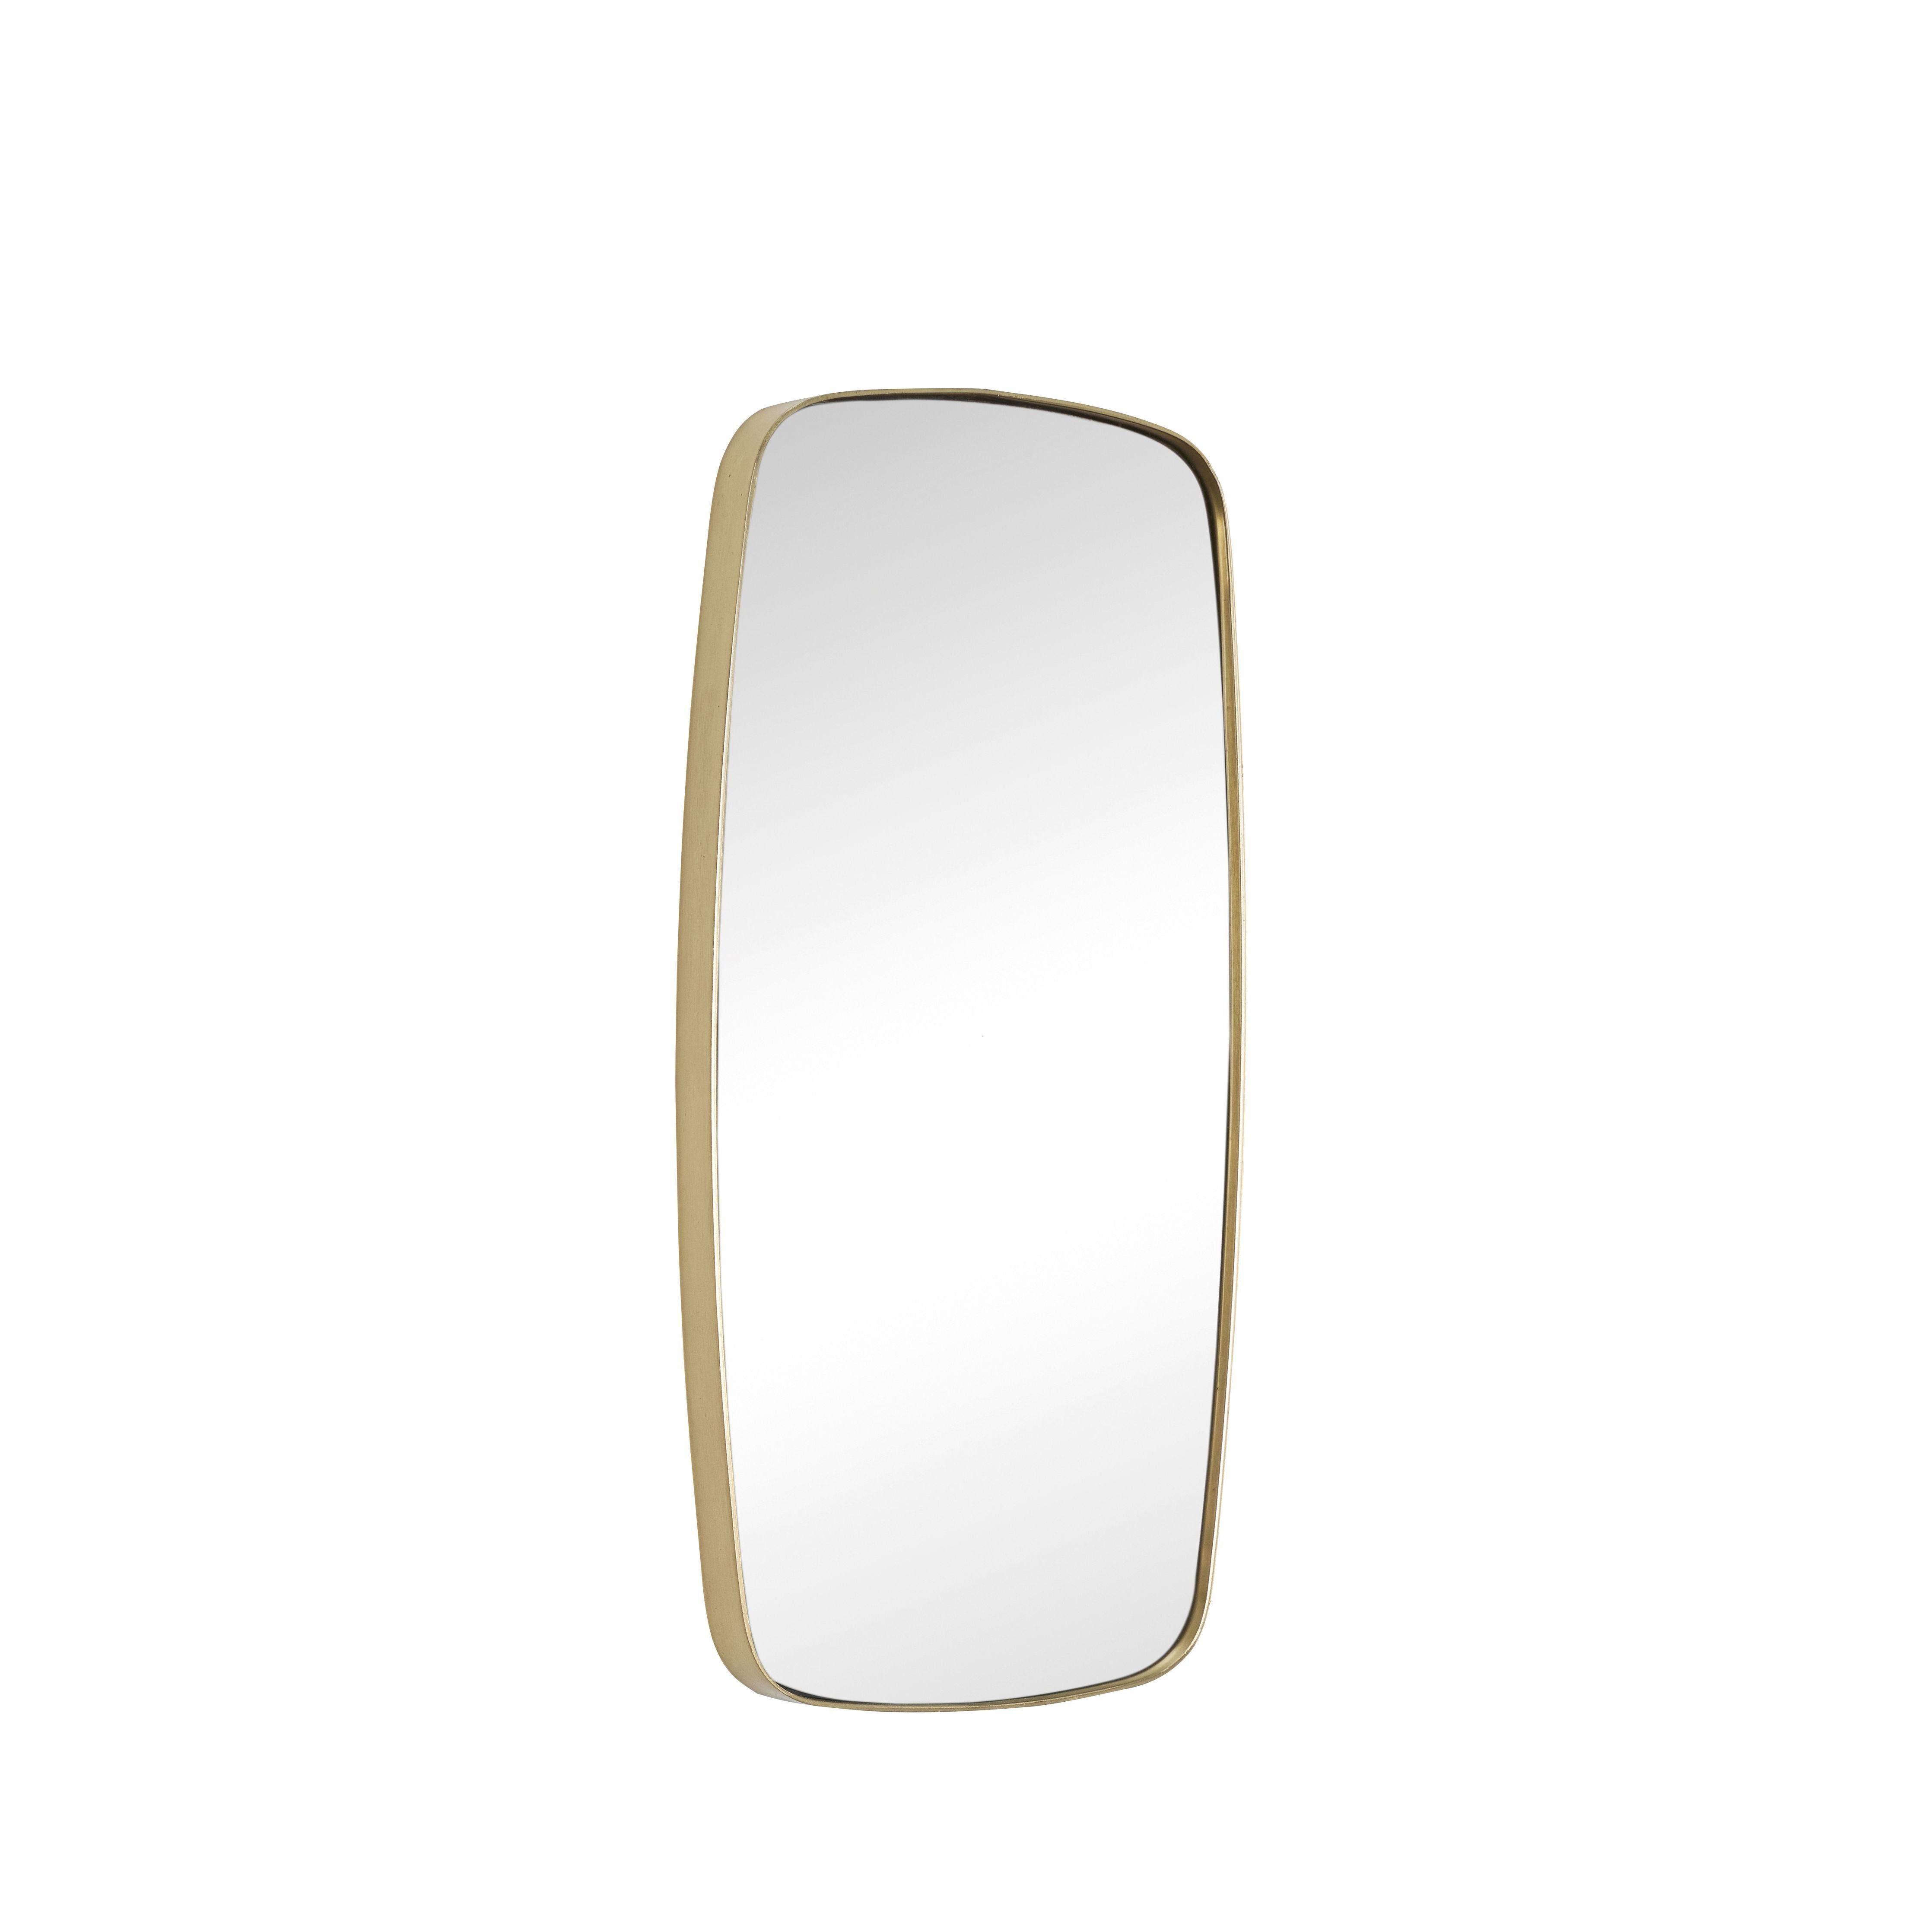 Hübsch Retro Wall Mirror Rectangular Brass